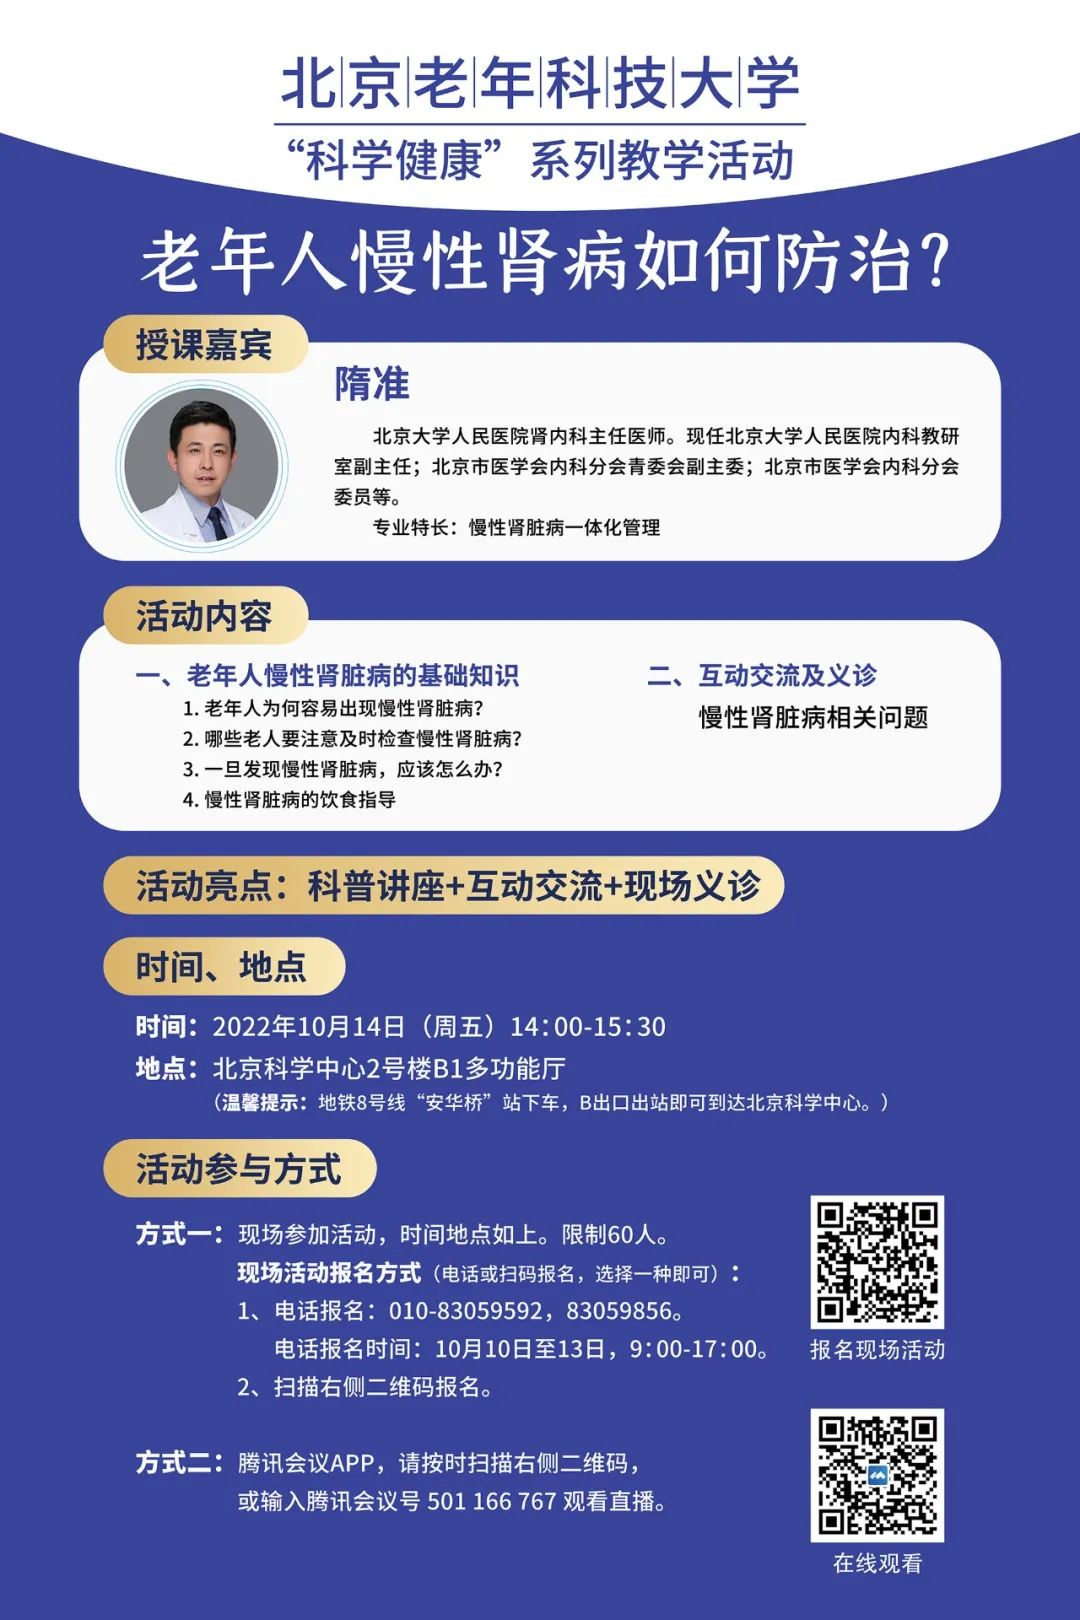 活动预告 | 北京老年科技大学活动：老年人慢性肾病如何防治？